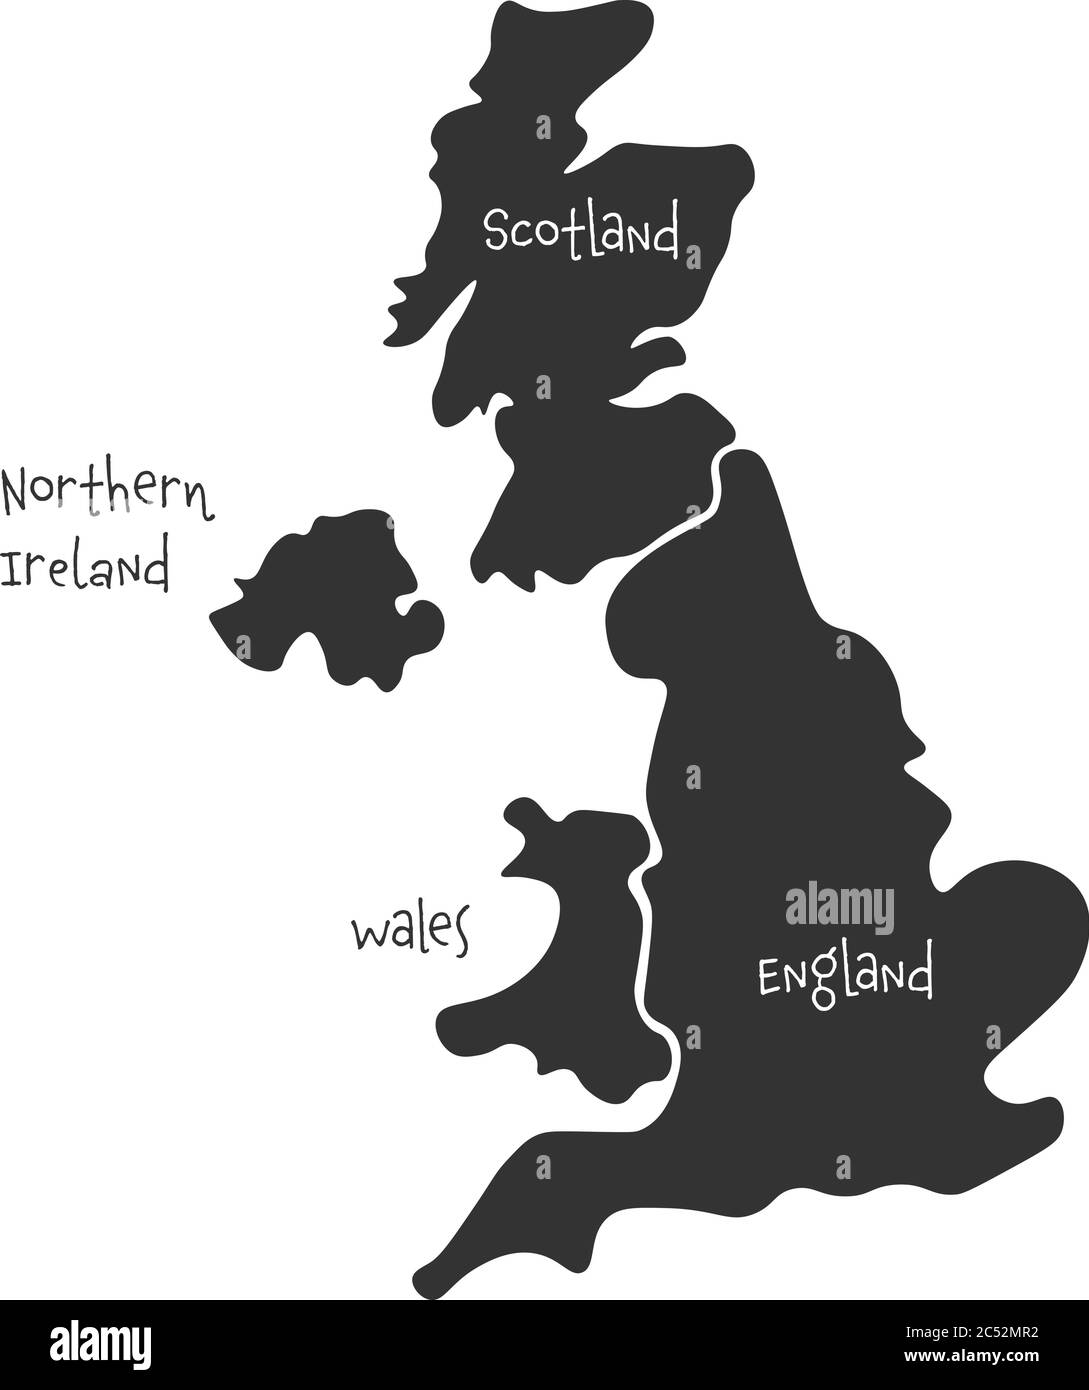 Großbritannien, auch bekannt als Großbritannien, von Großbritannien und Nordirland handgezeichnete leere Karte. Aufgeteilt in vier Länder - England, Wales, Schottland und NI. Einfache flache Vektorgrafik. Stock Vektor